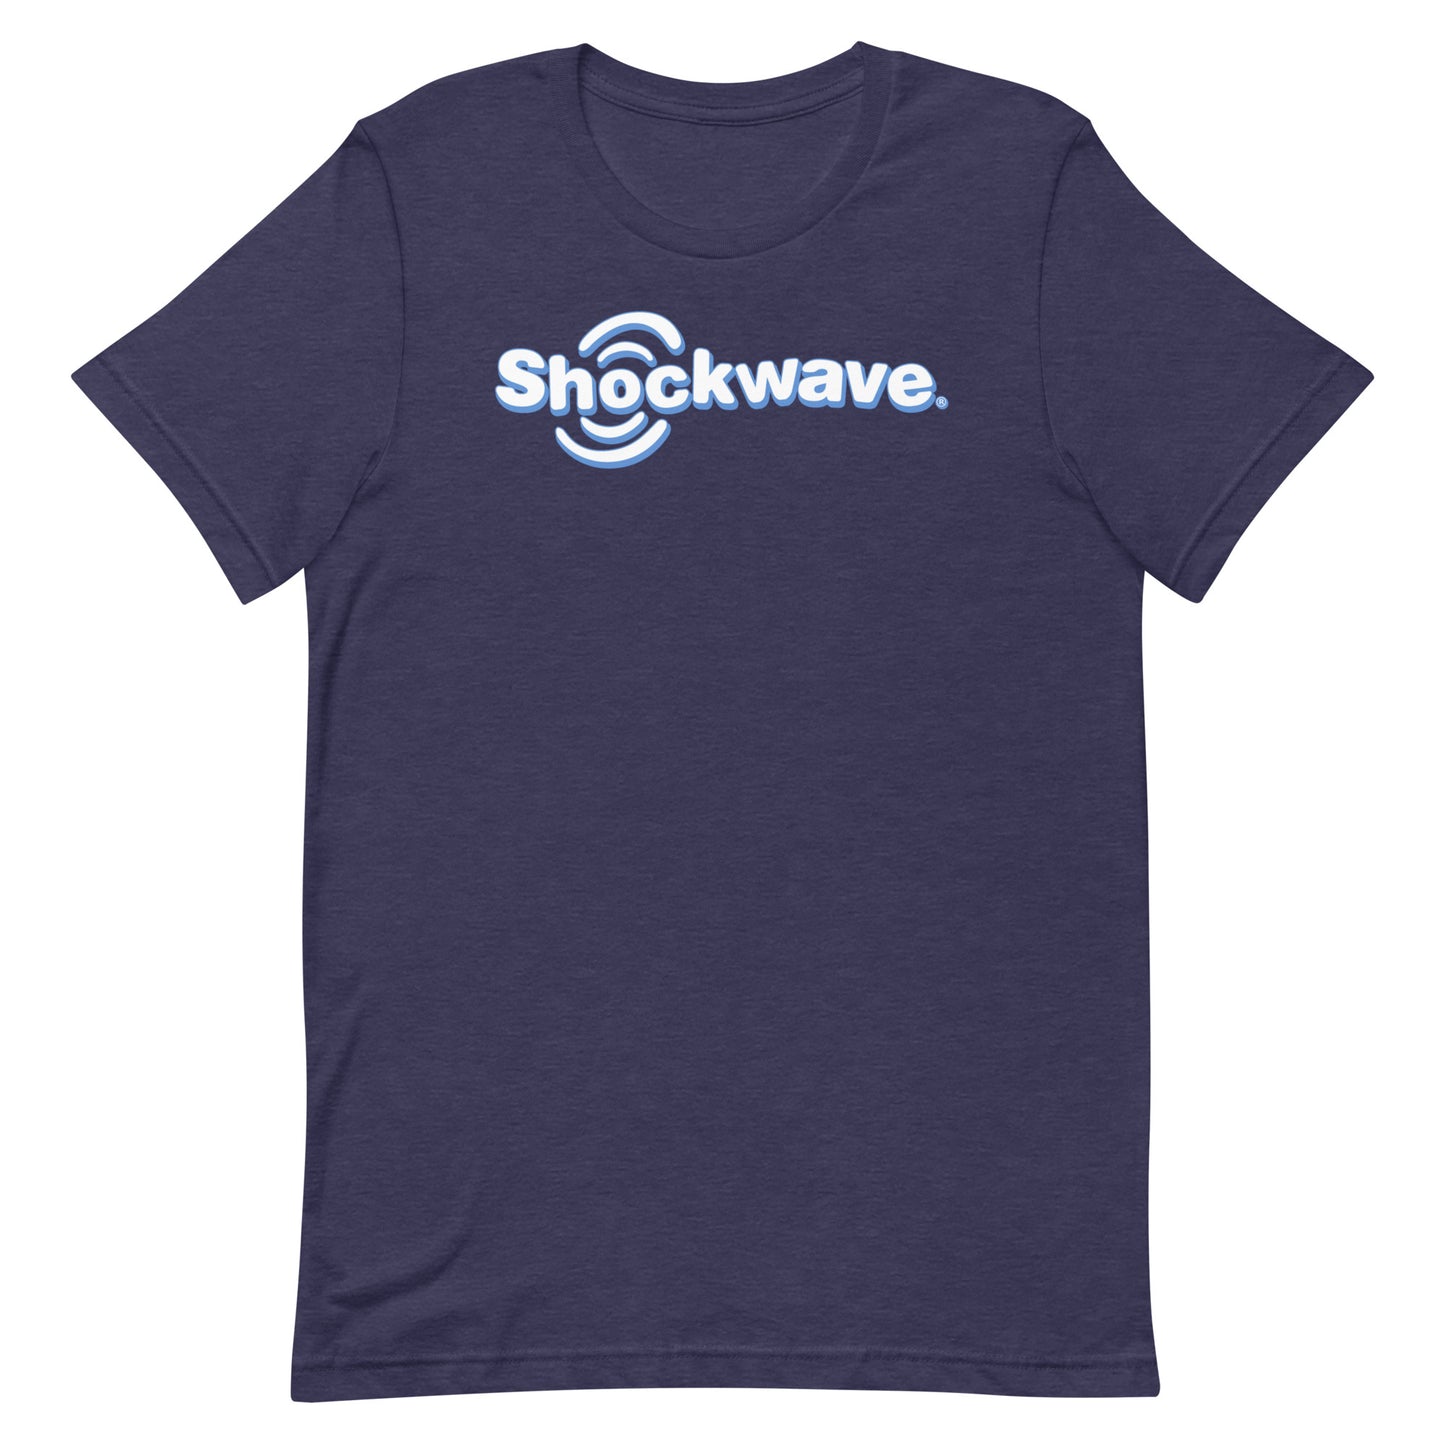 Shockwave unisex t-shirt